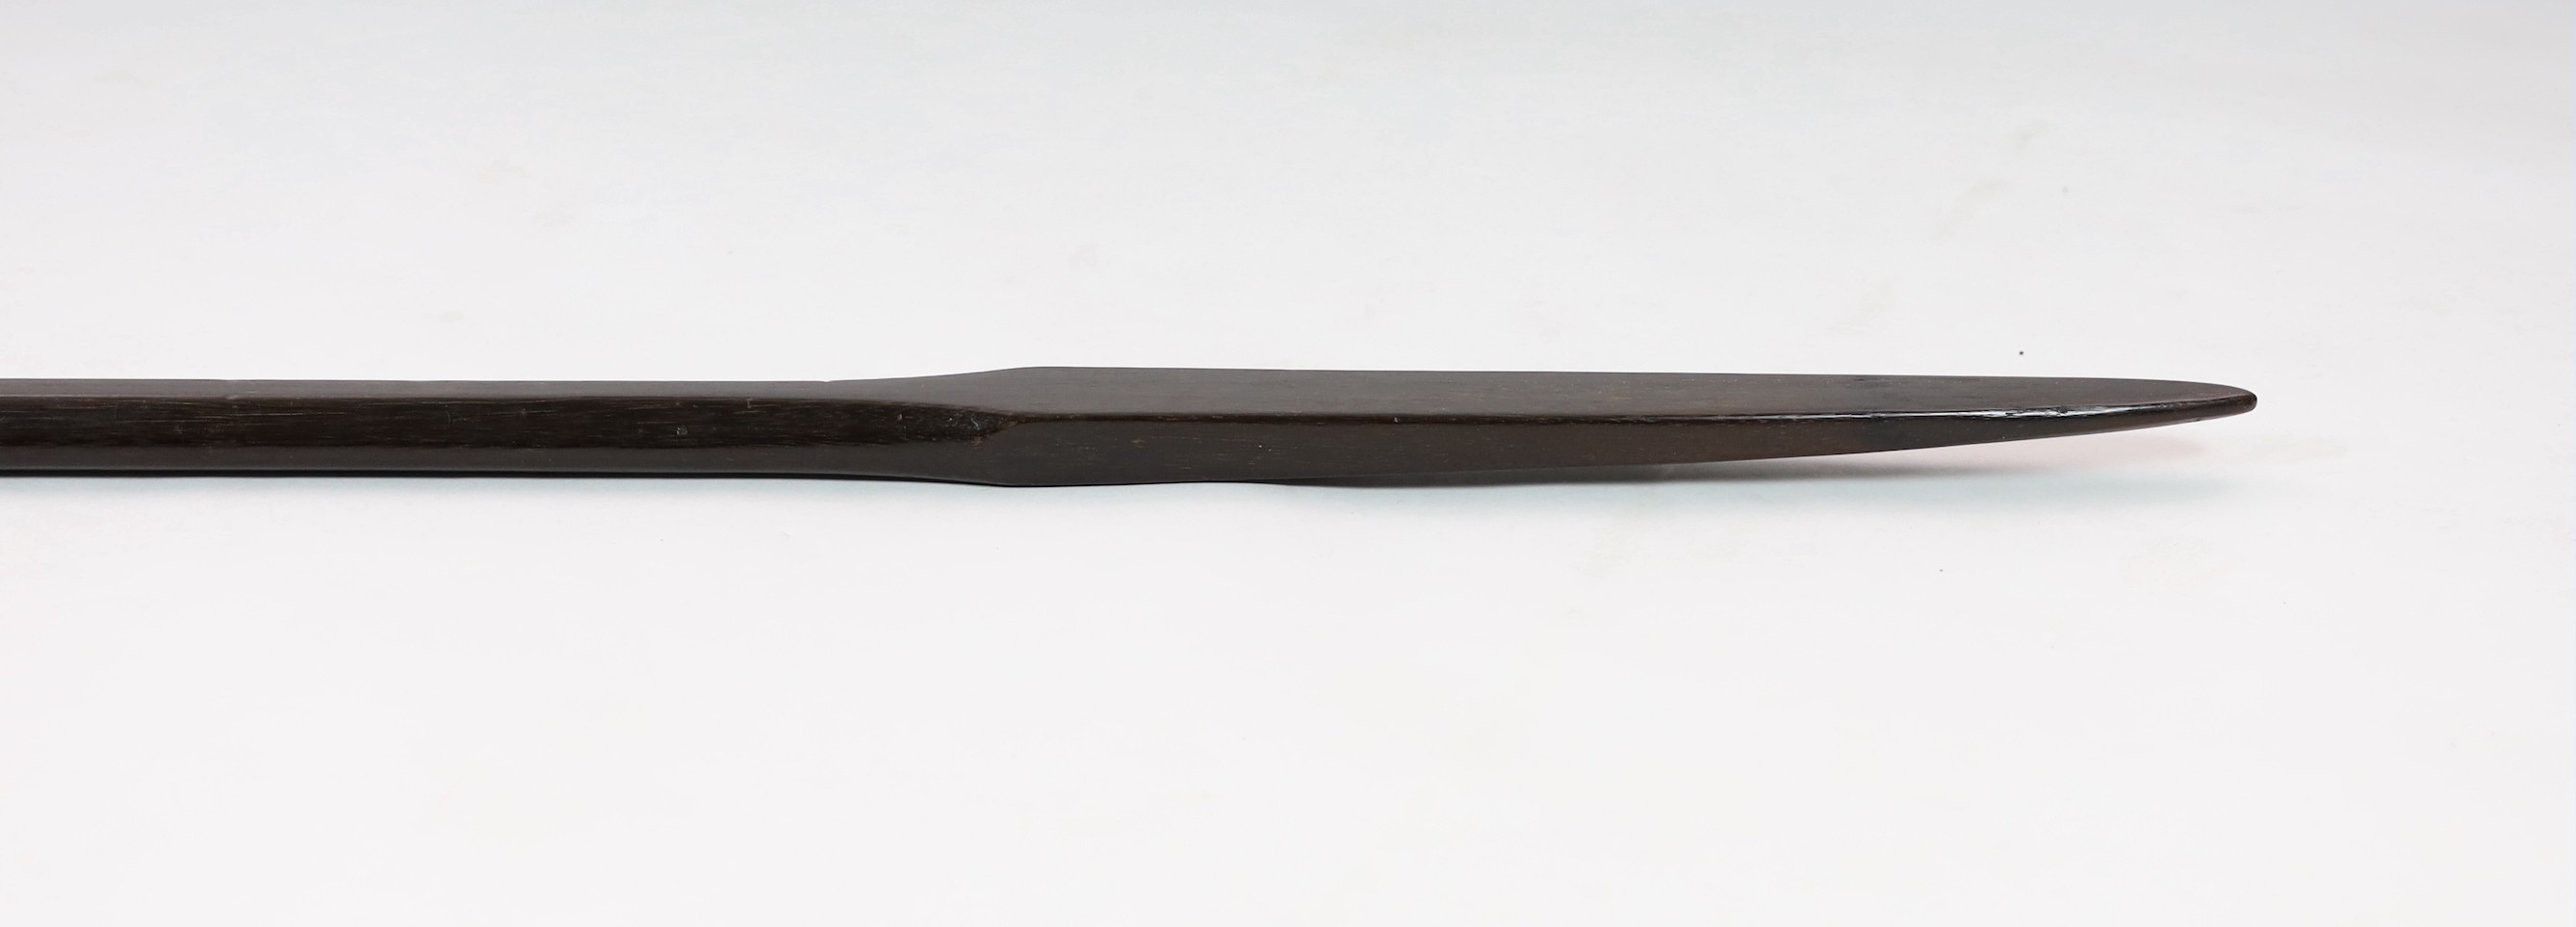 A Polynesian hardwood double ended spear, 173cm long